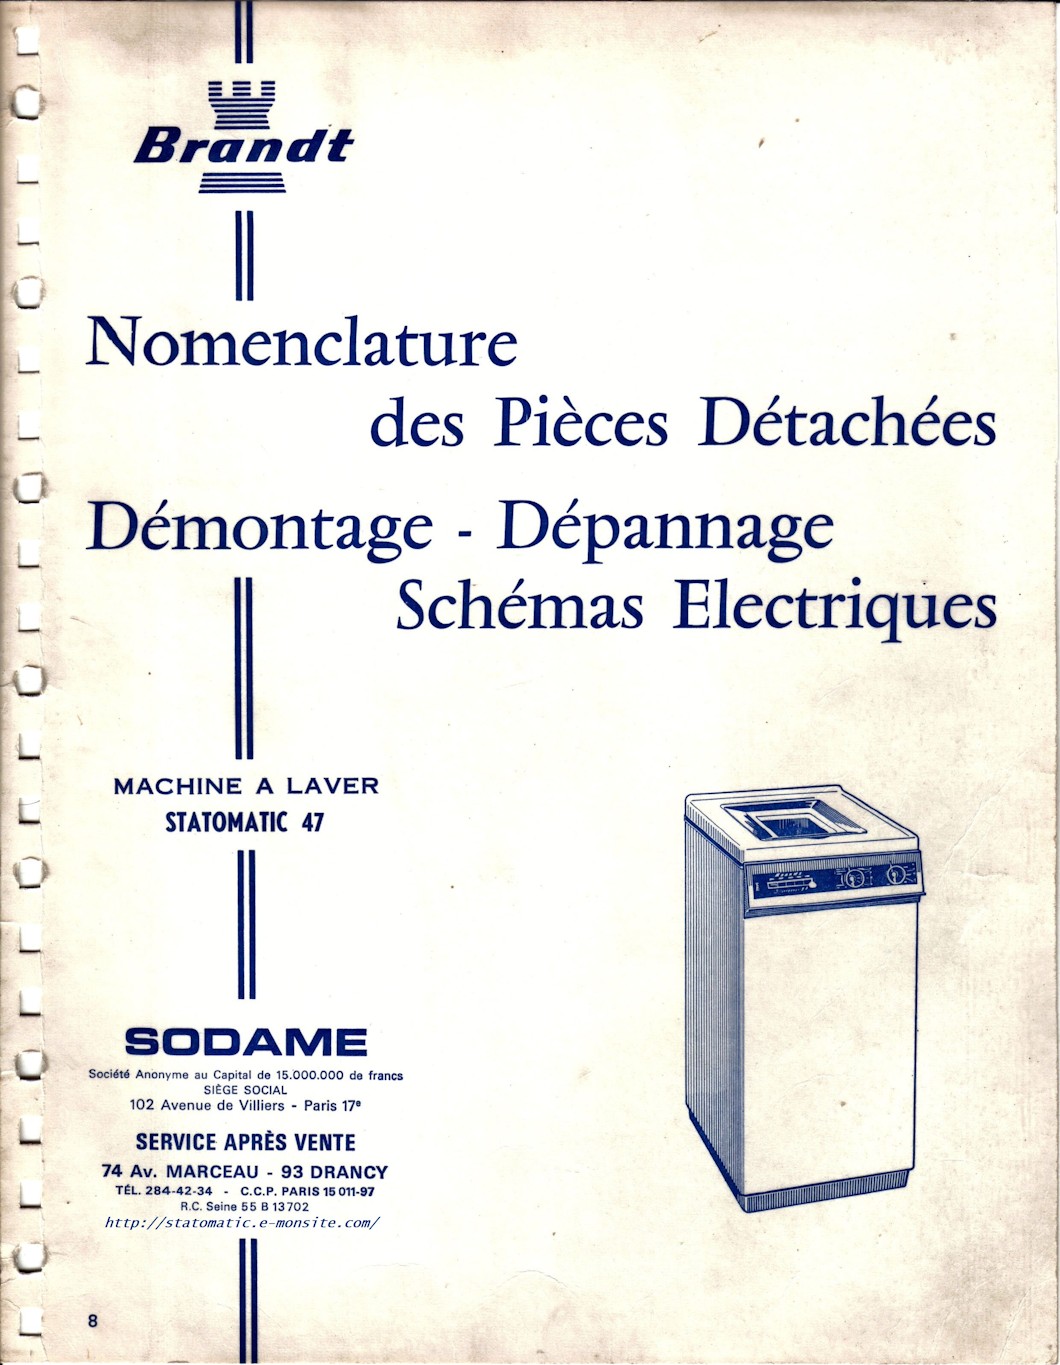 Machine à laver Brandt Statomatic 47, nomenclature des pièces détachées